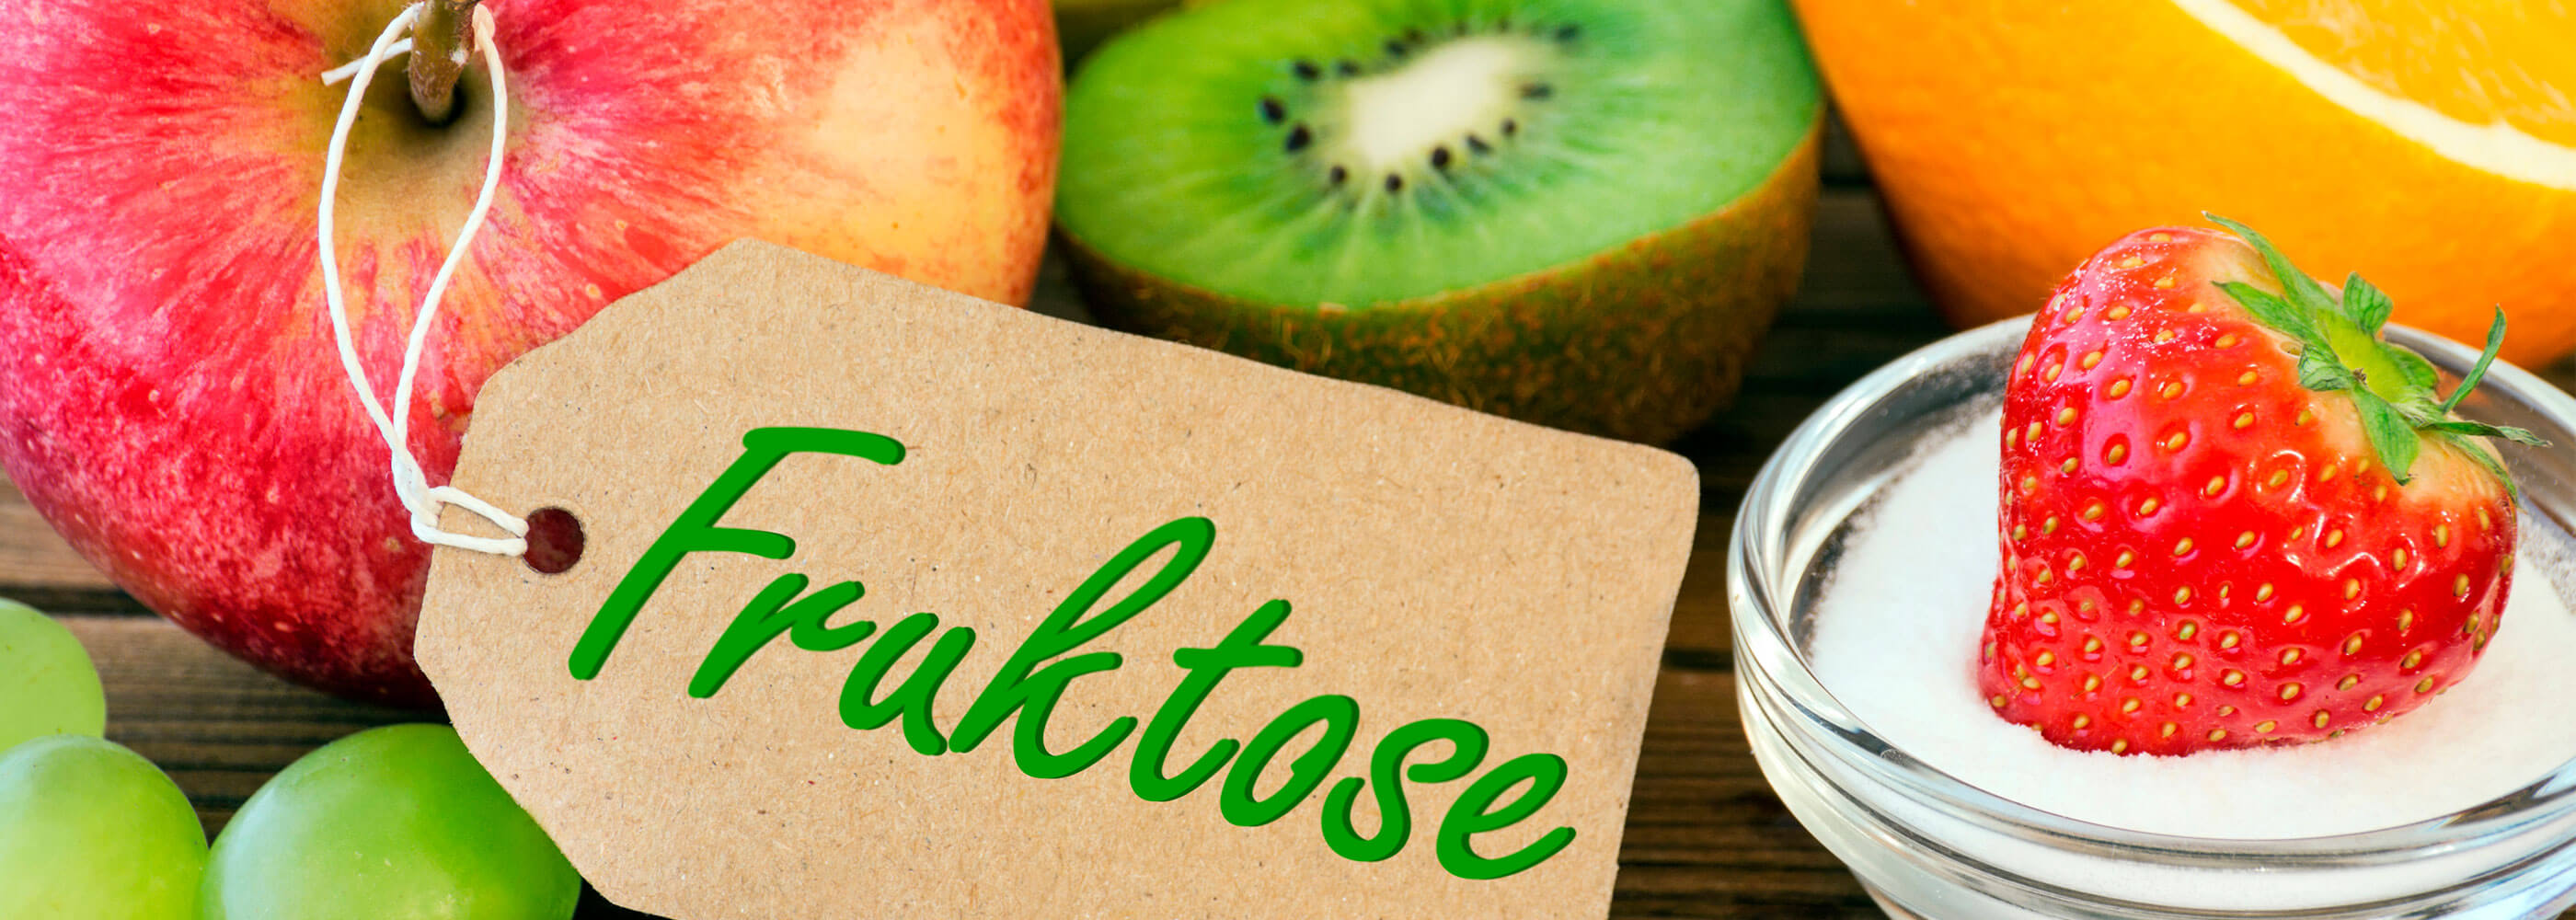 Tout savoir sur l'intolérance au fructose | SteviaSweet